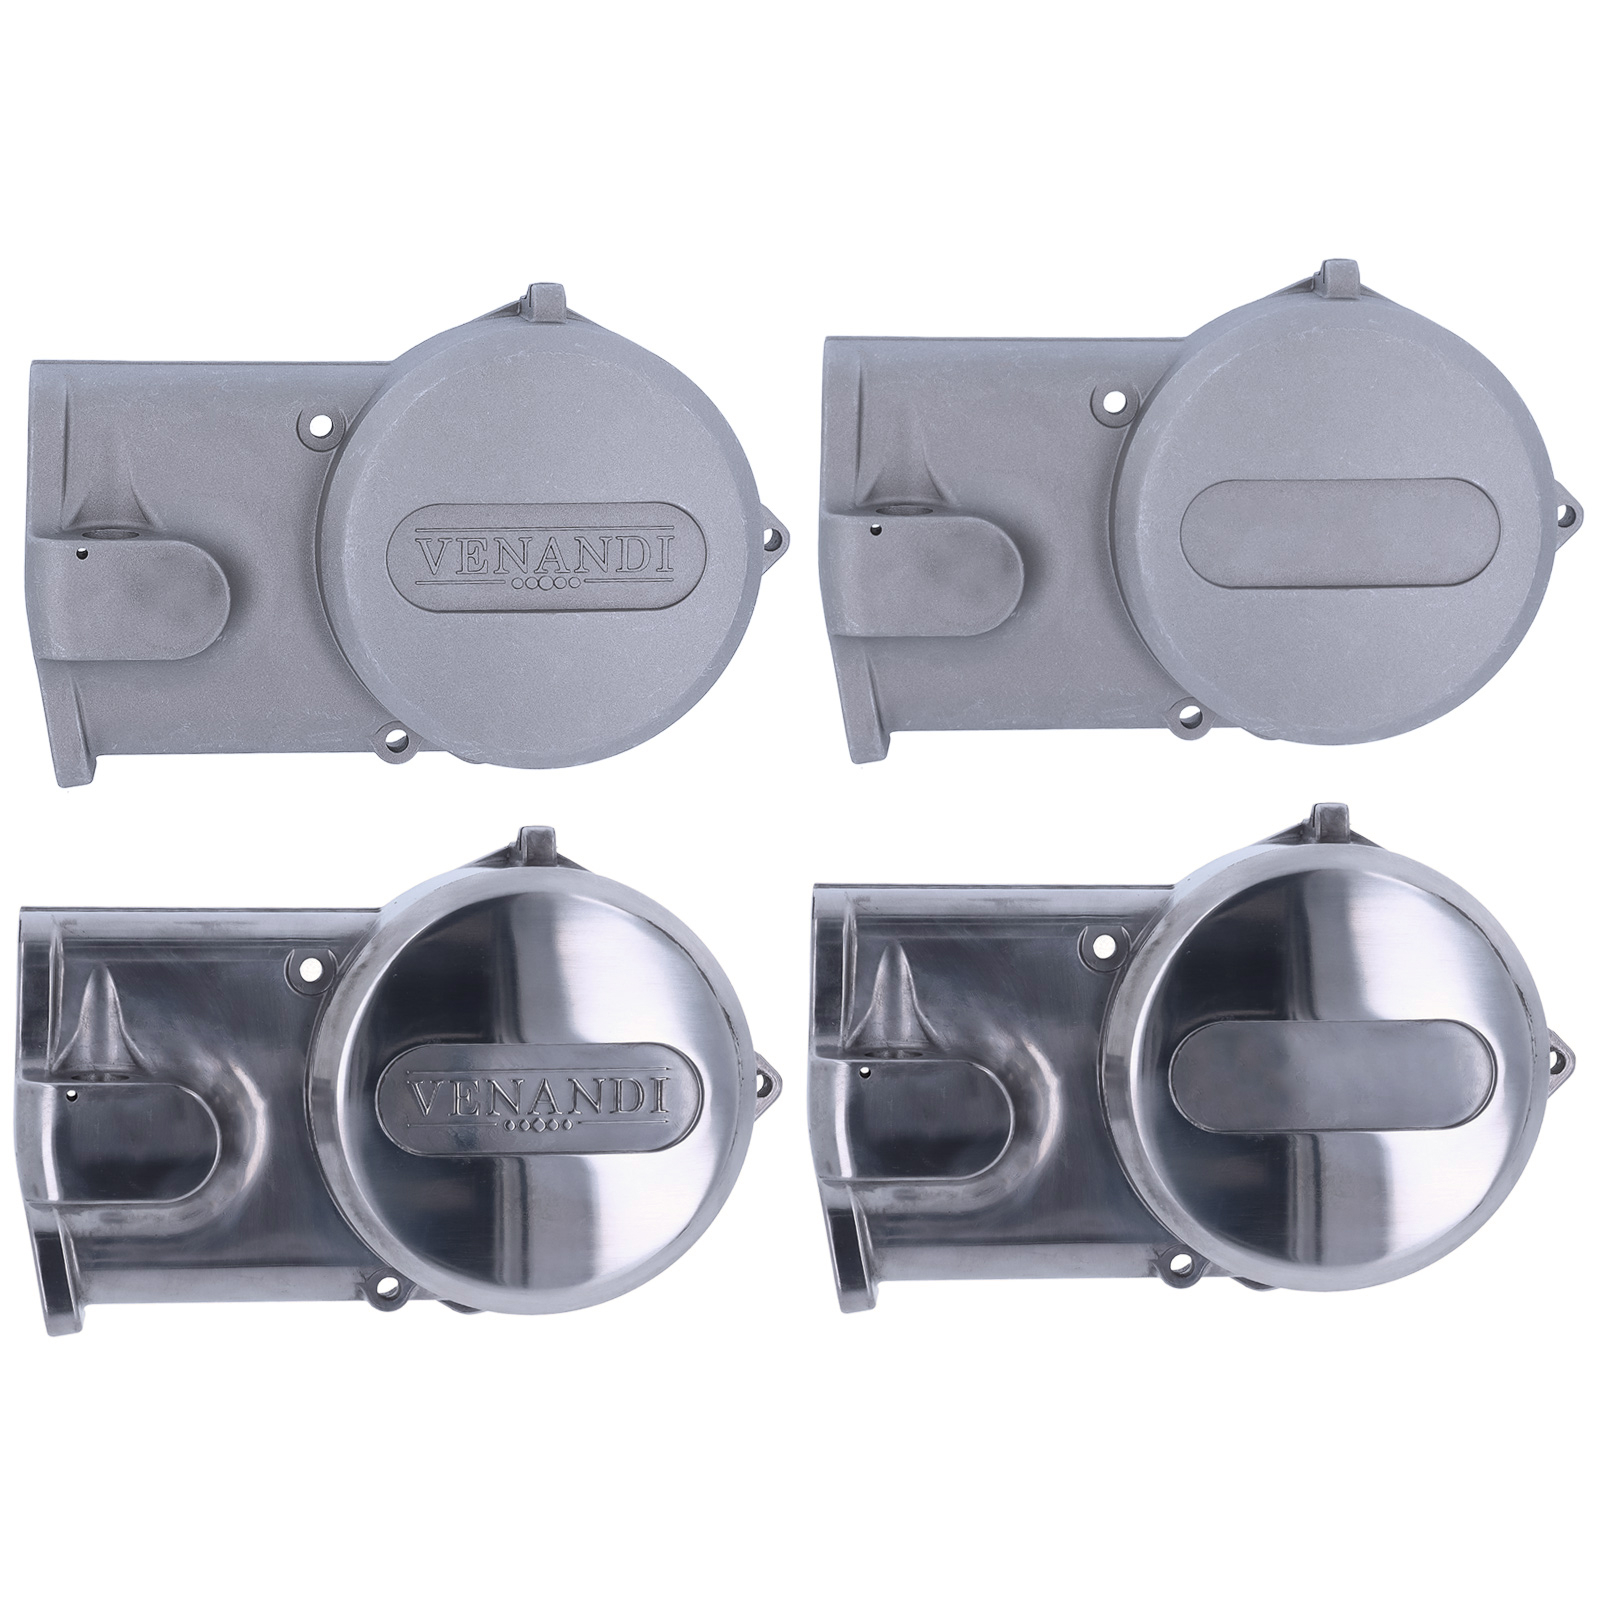 Venandi Lichtmaschinendeckel für Motor M541 S51 SR50 KR51/2 S70, 26,90 €